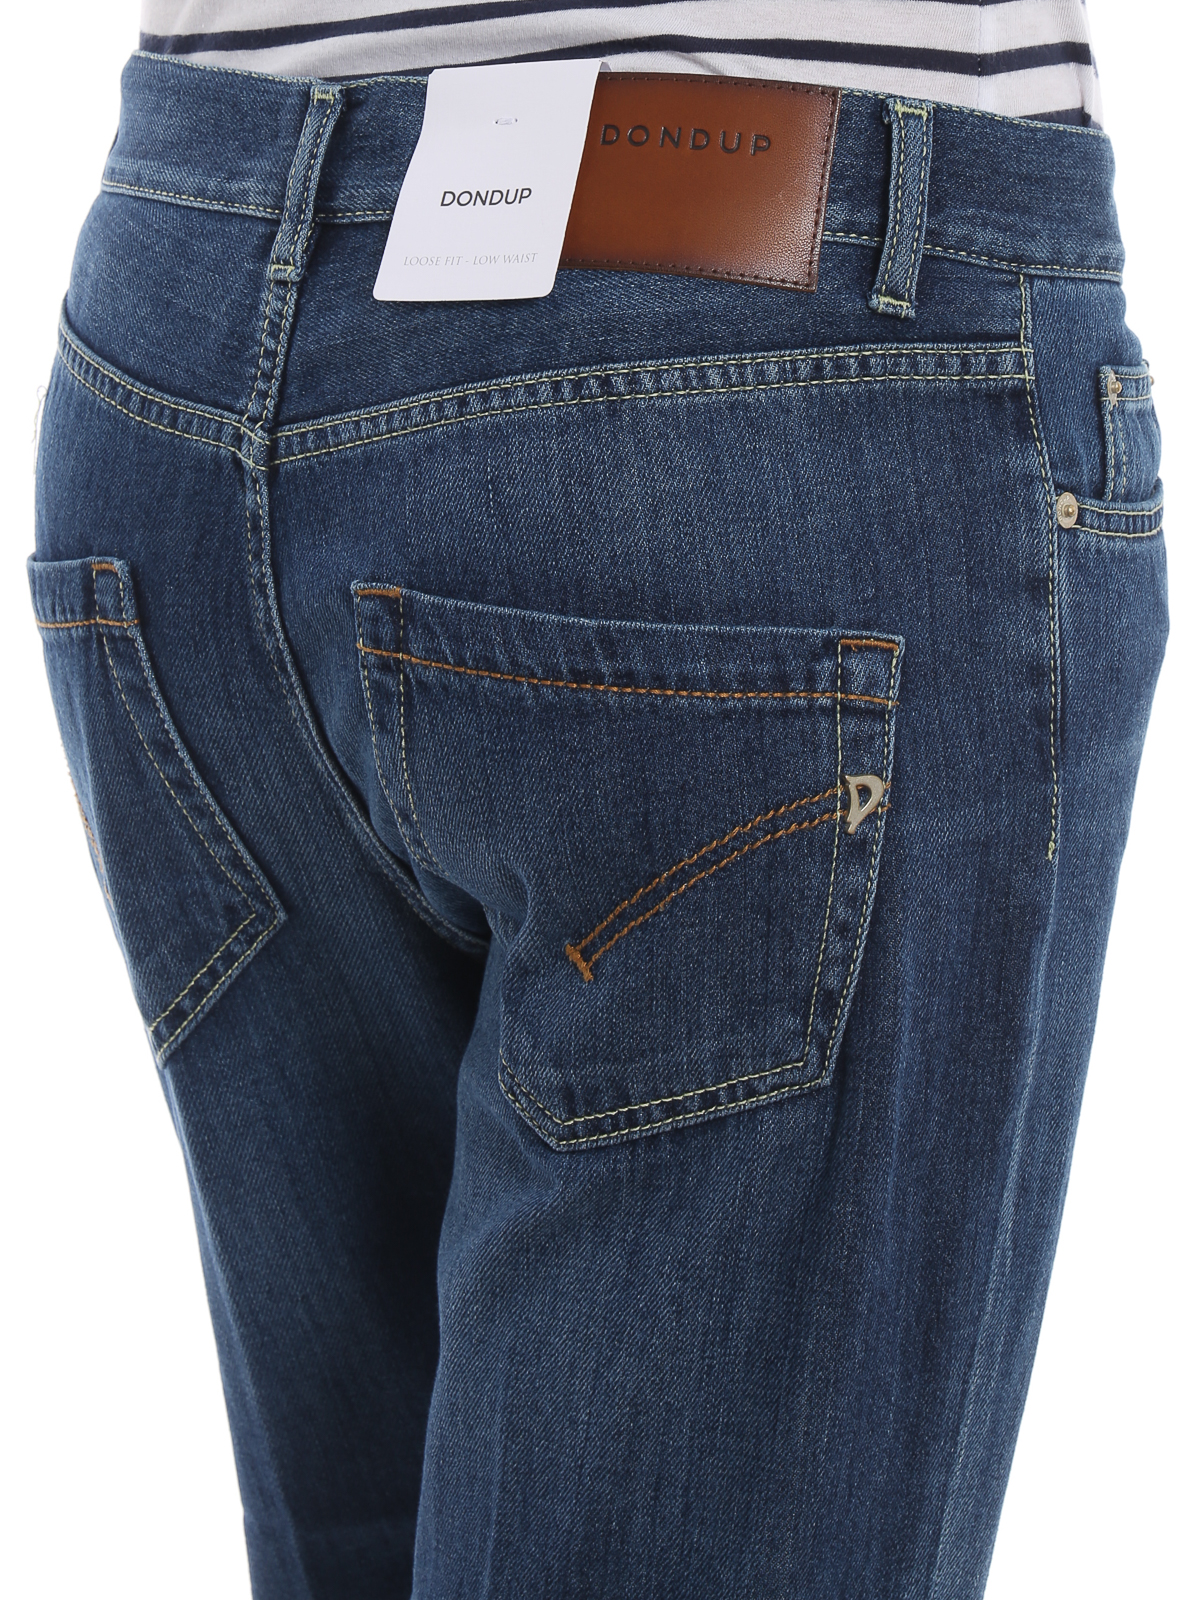 paige low rise jeans